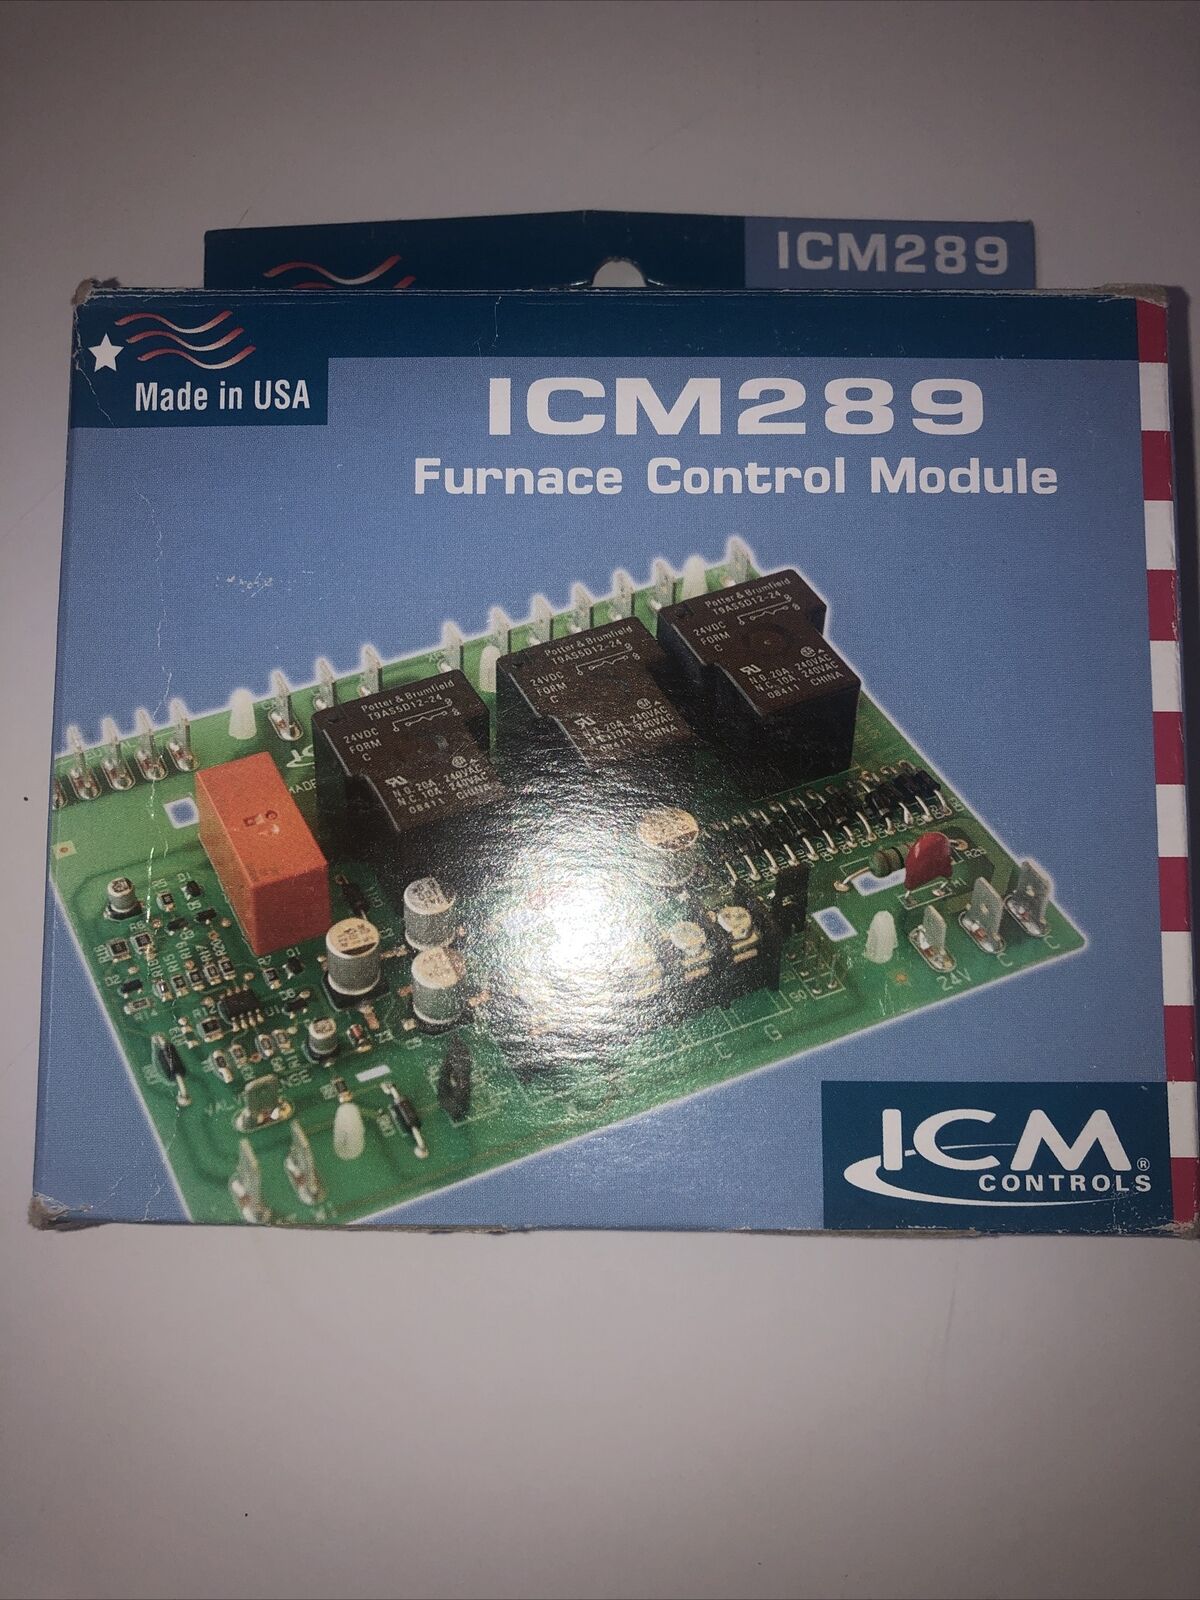 ICM289 Furnace Control Module